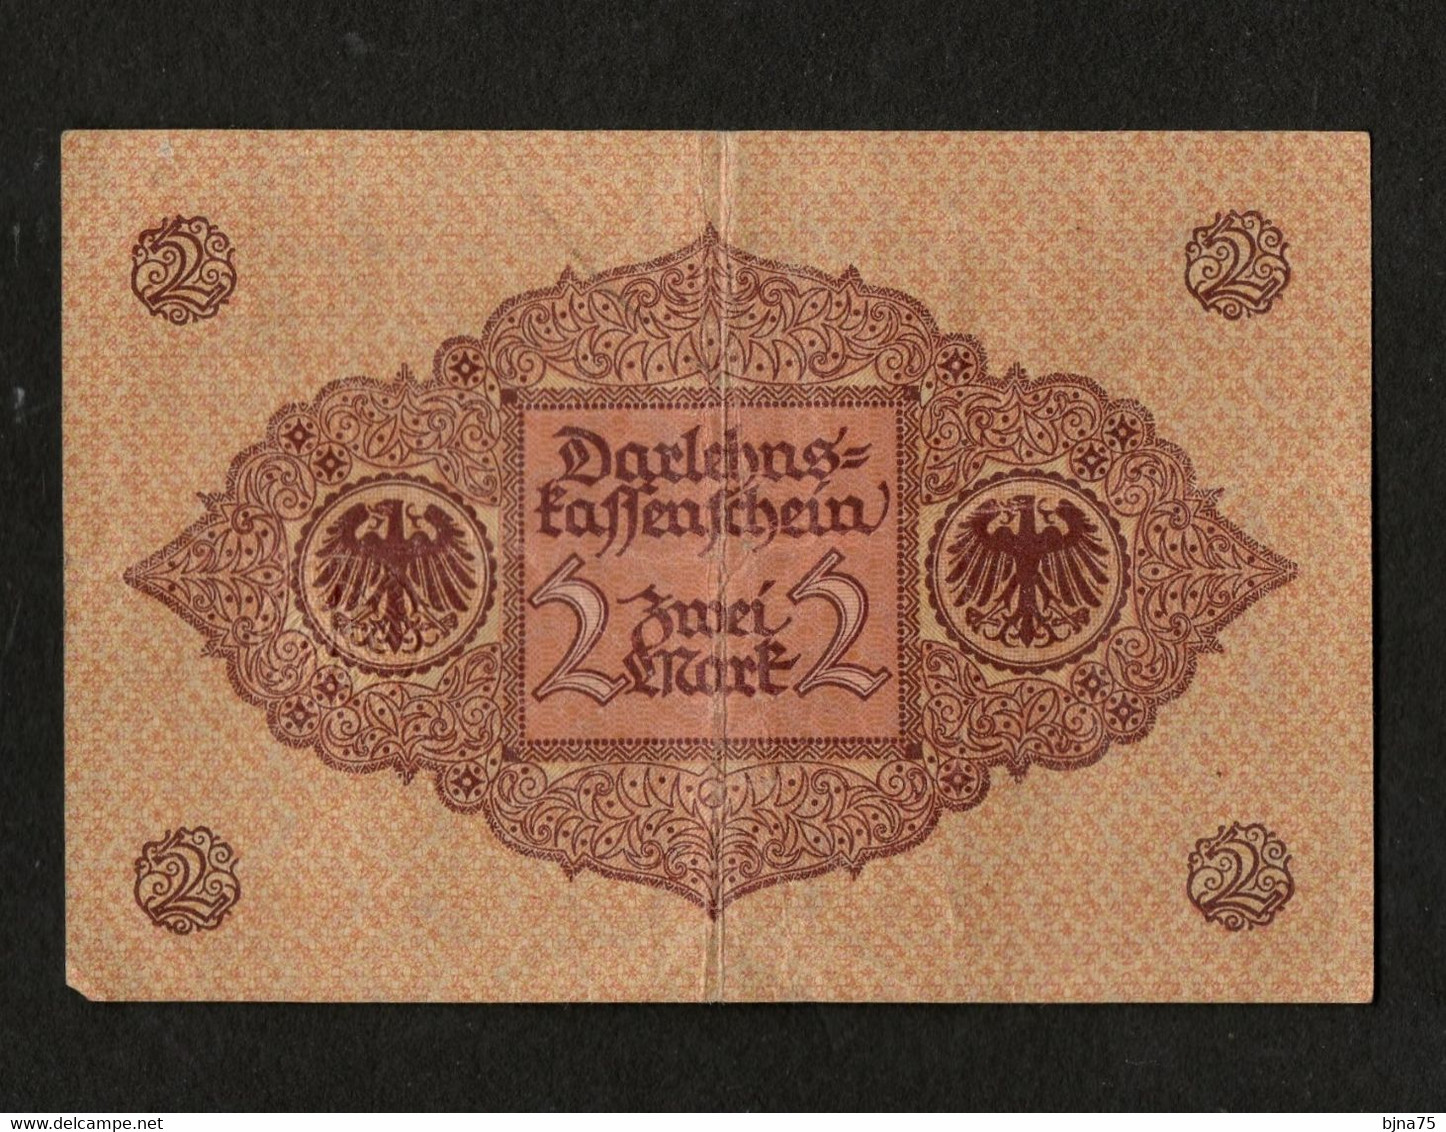 1920 März  DARLEHNSKASSENSCHEIN  - 2 MARK - Emergency Money / Berlin / N° 24-613291 - 2 Mark